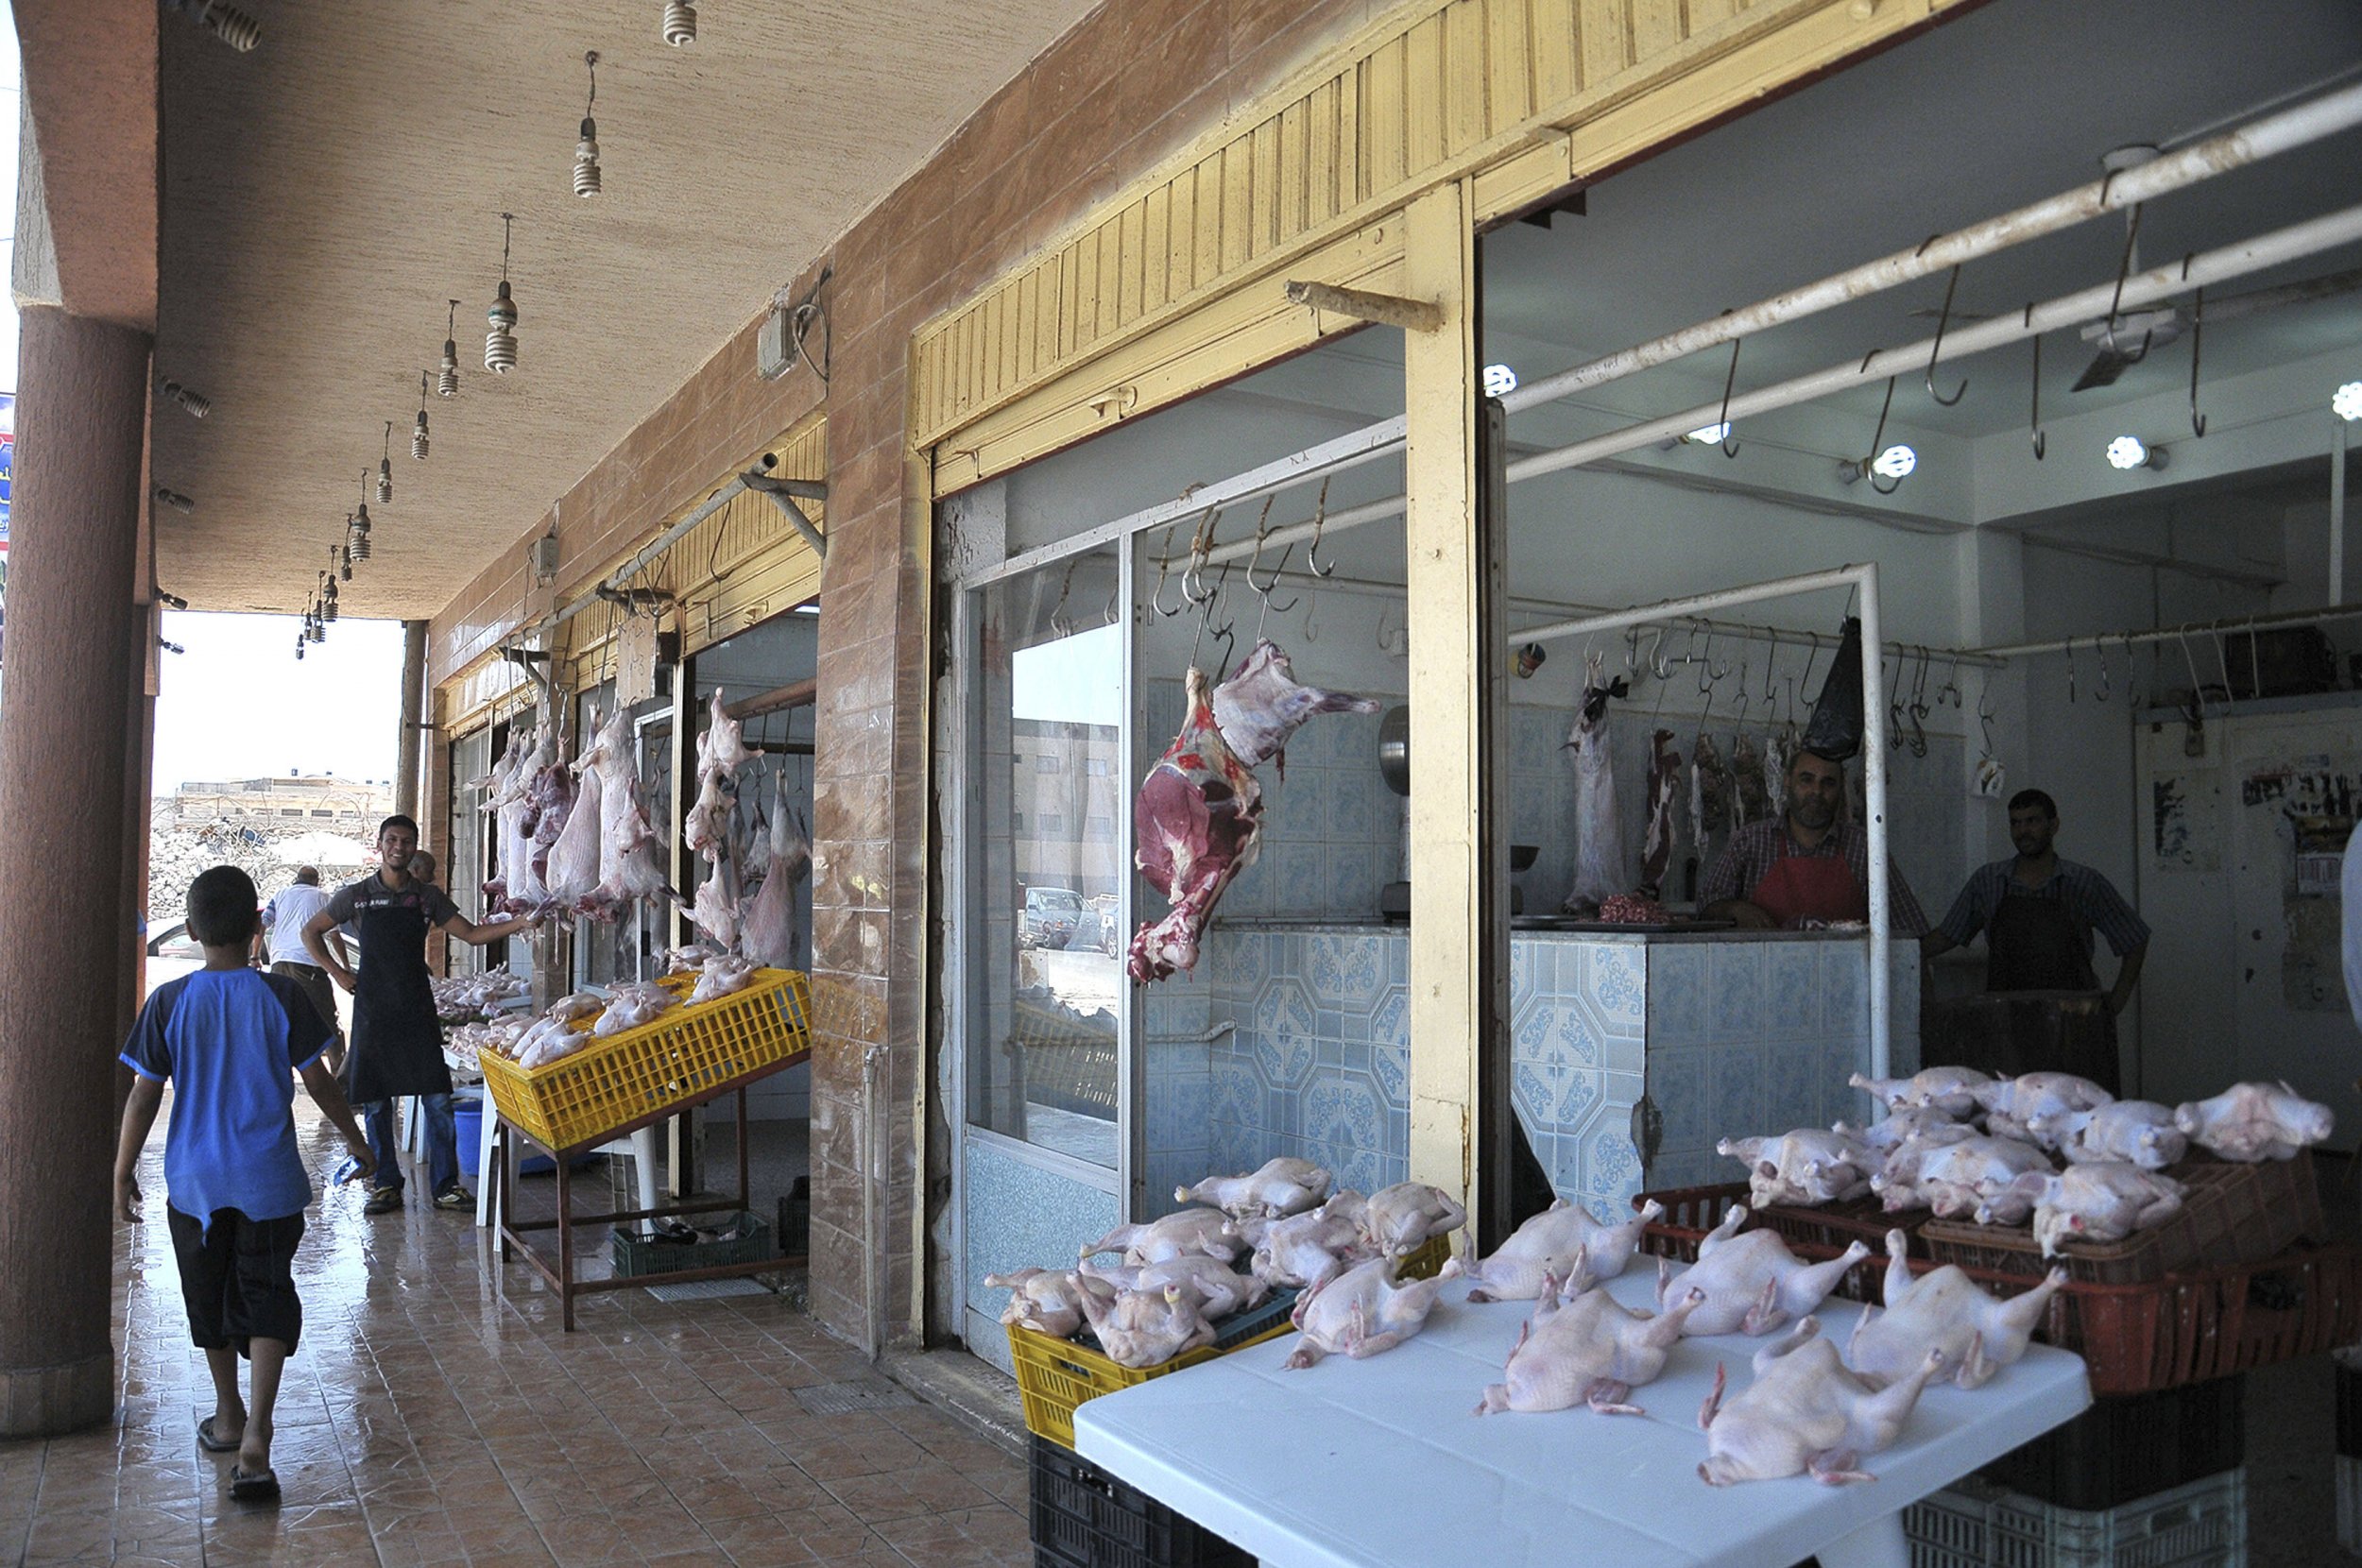 Selling meat in Derna, Libya